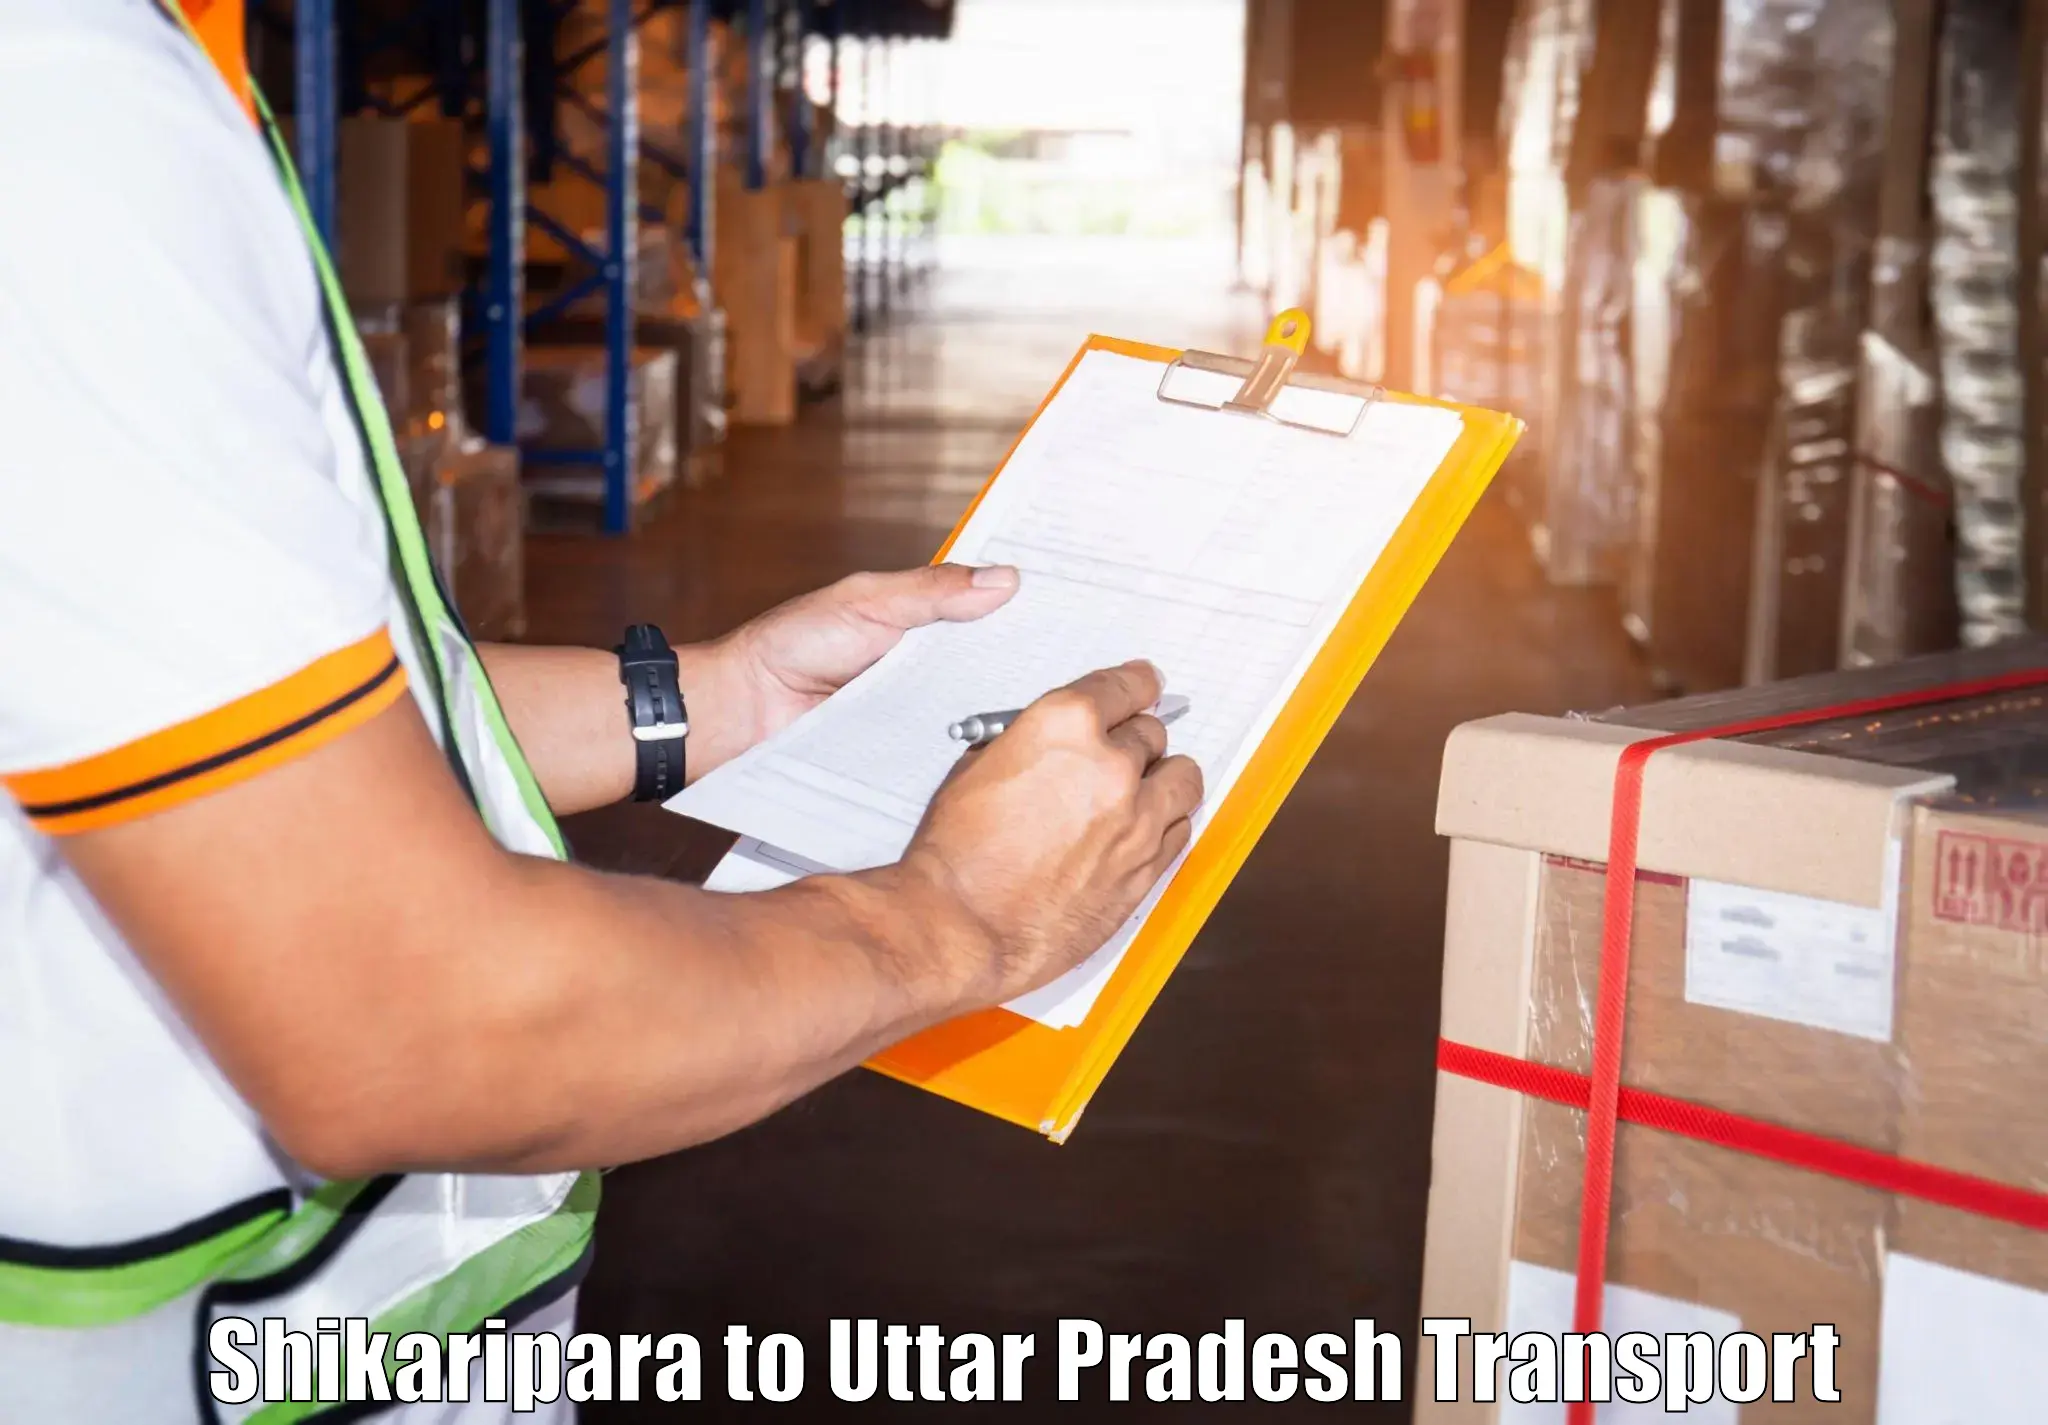 Lorry transport service Shikaripara to Pilibhit